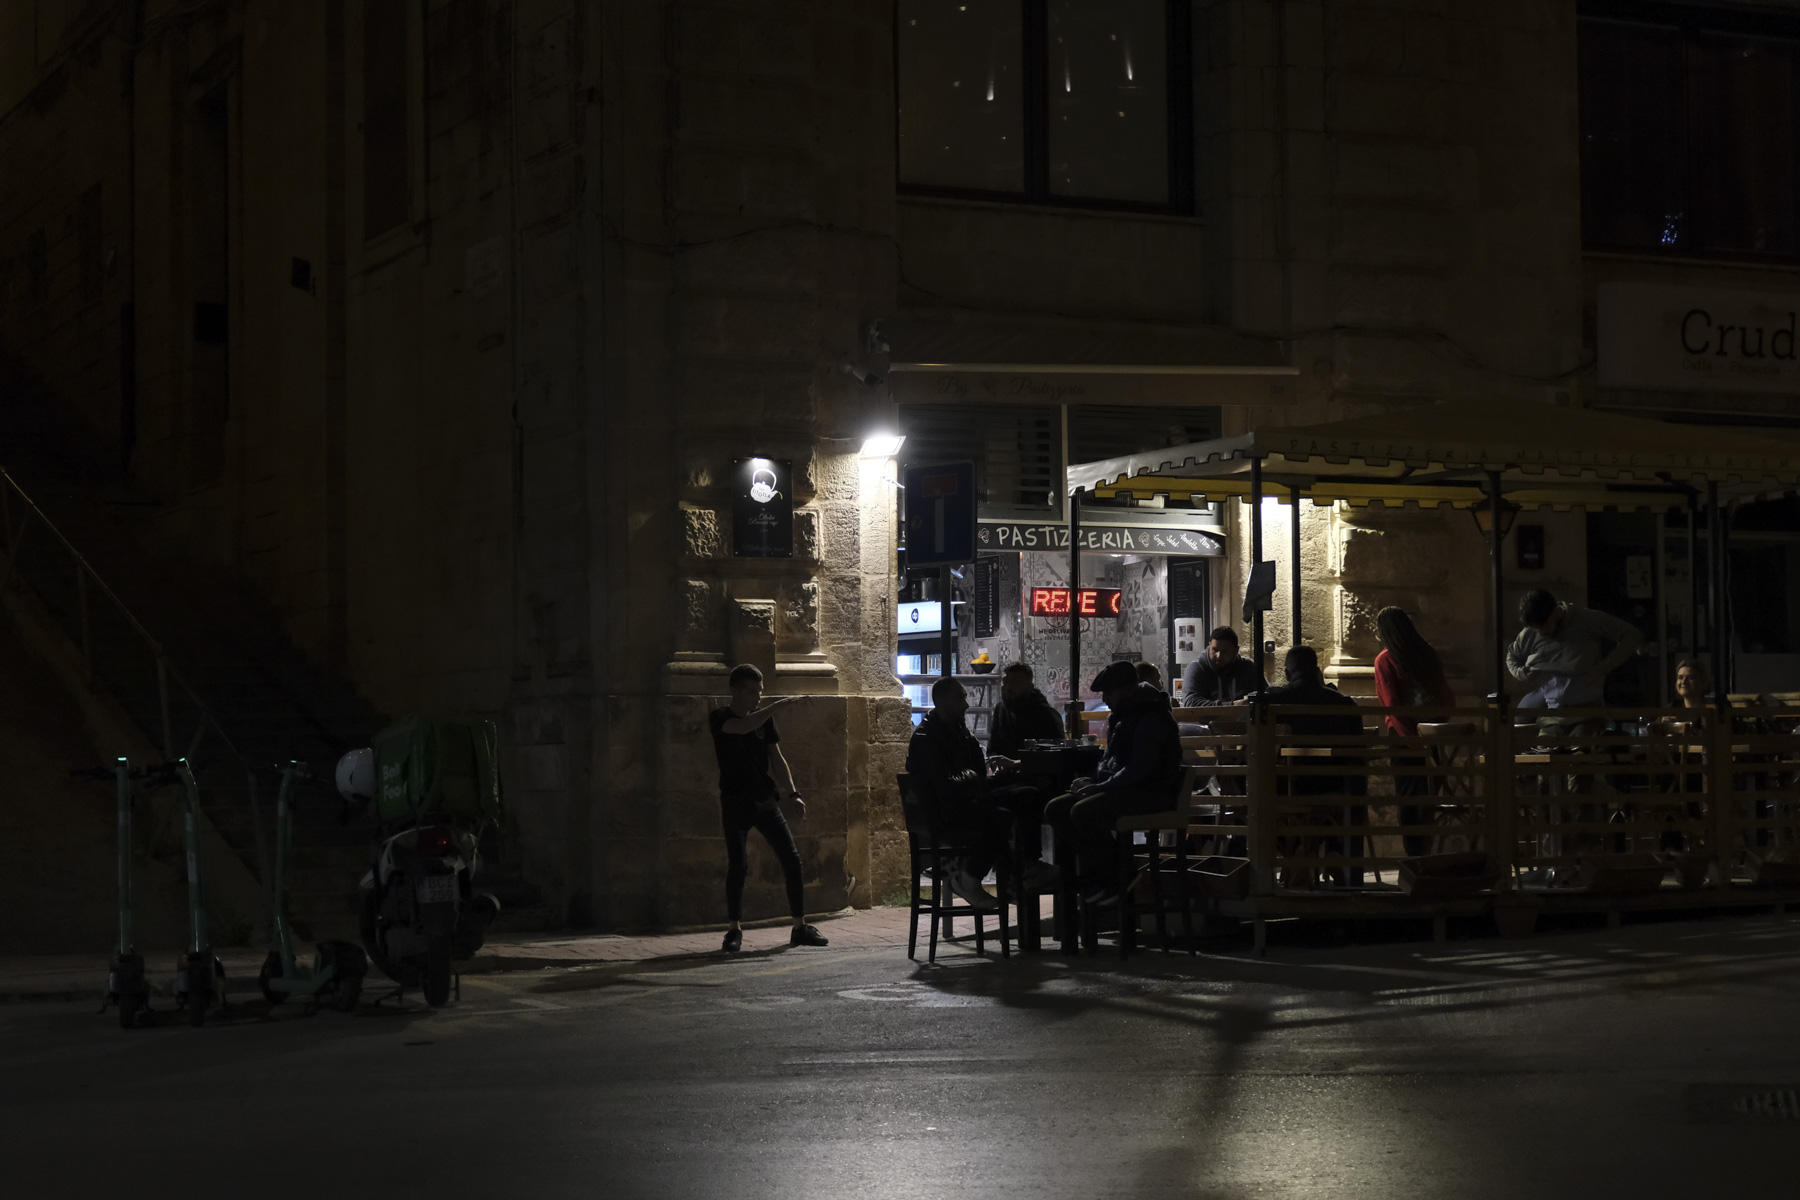 Night street scene outside a cafe